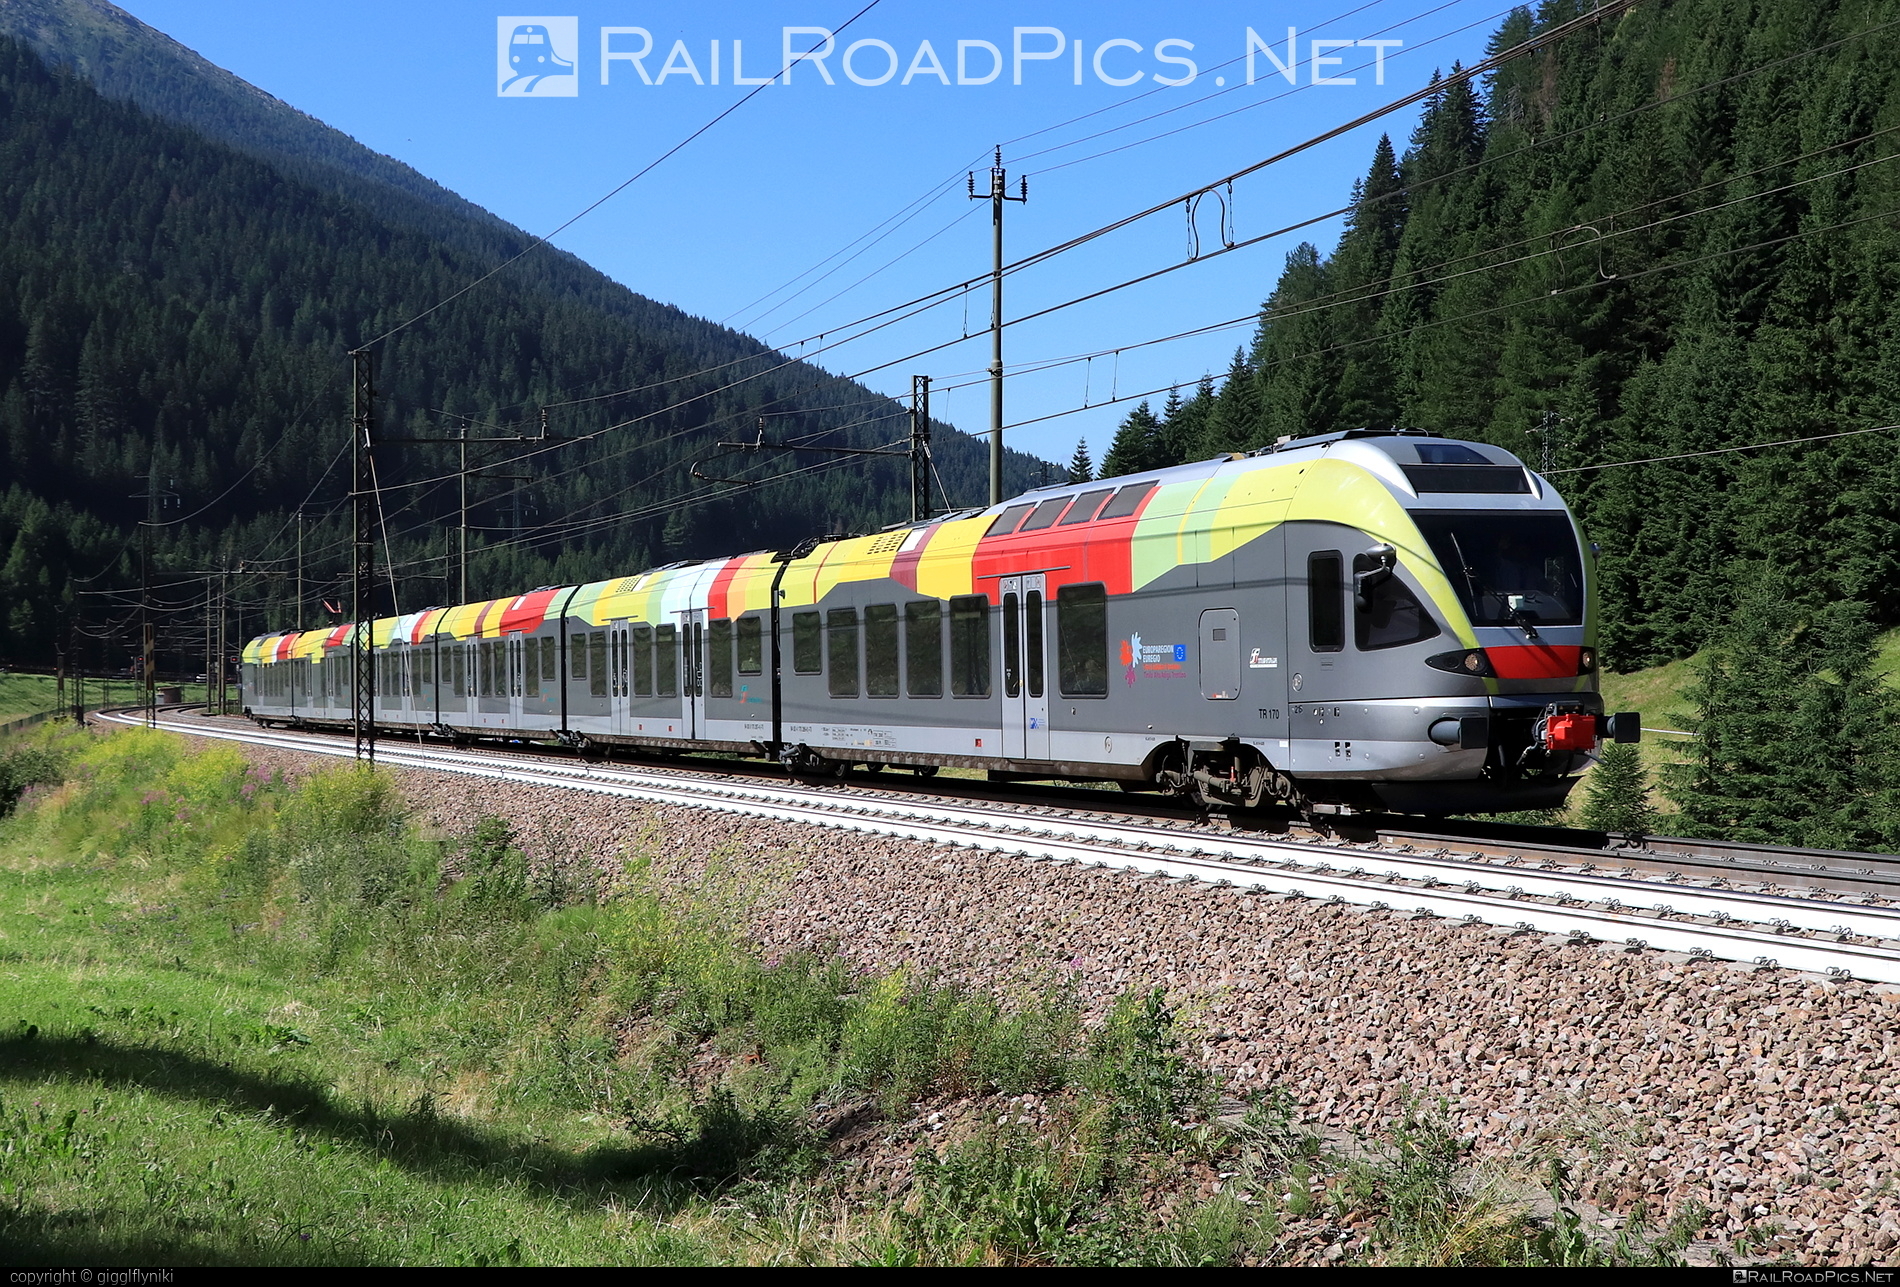 Stadler FLIRT - 170 215 operated by SAD S.p.A. #ferroviedellostato #fs #fsitaliane #sad #stadler #stadlerFlirt #stadlerrail #stadlerrailag #trenitalia #trenitaliaspa